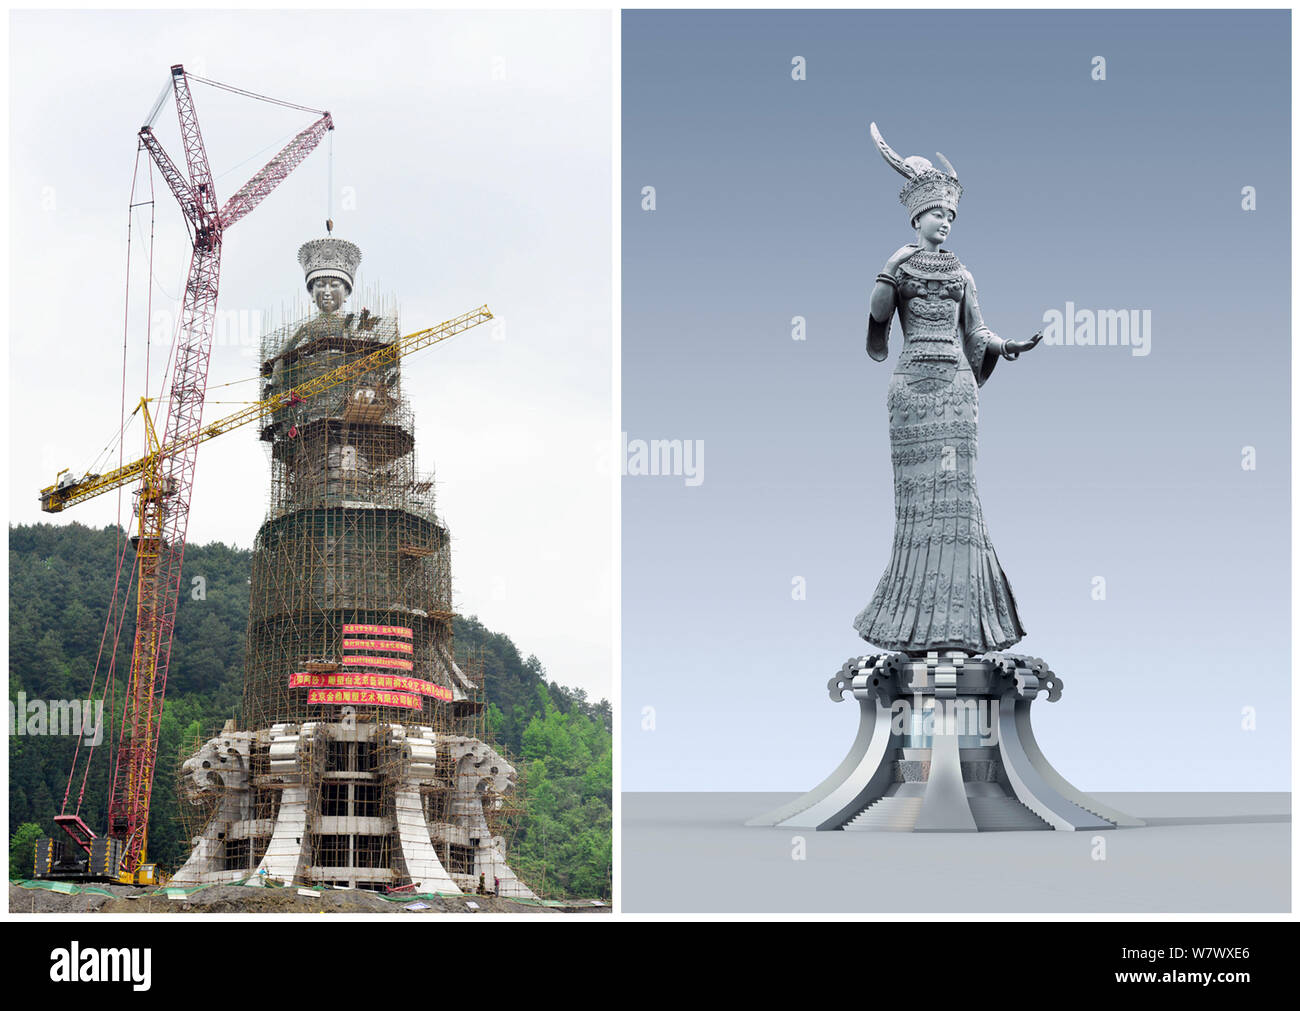 Dieser zusammengesetzte Foto zeigt die Baustelle und eines Künstlers redition eines riesigen Statue von Yang" Asha, die Göttin der Schönheit der Miao ethnischer gro Stockfoto